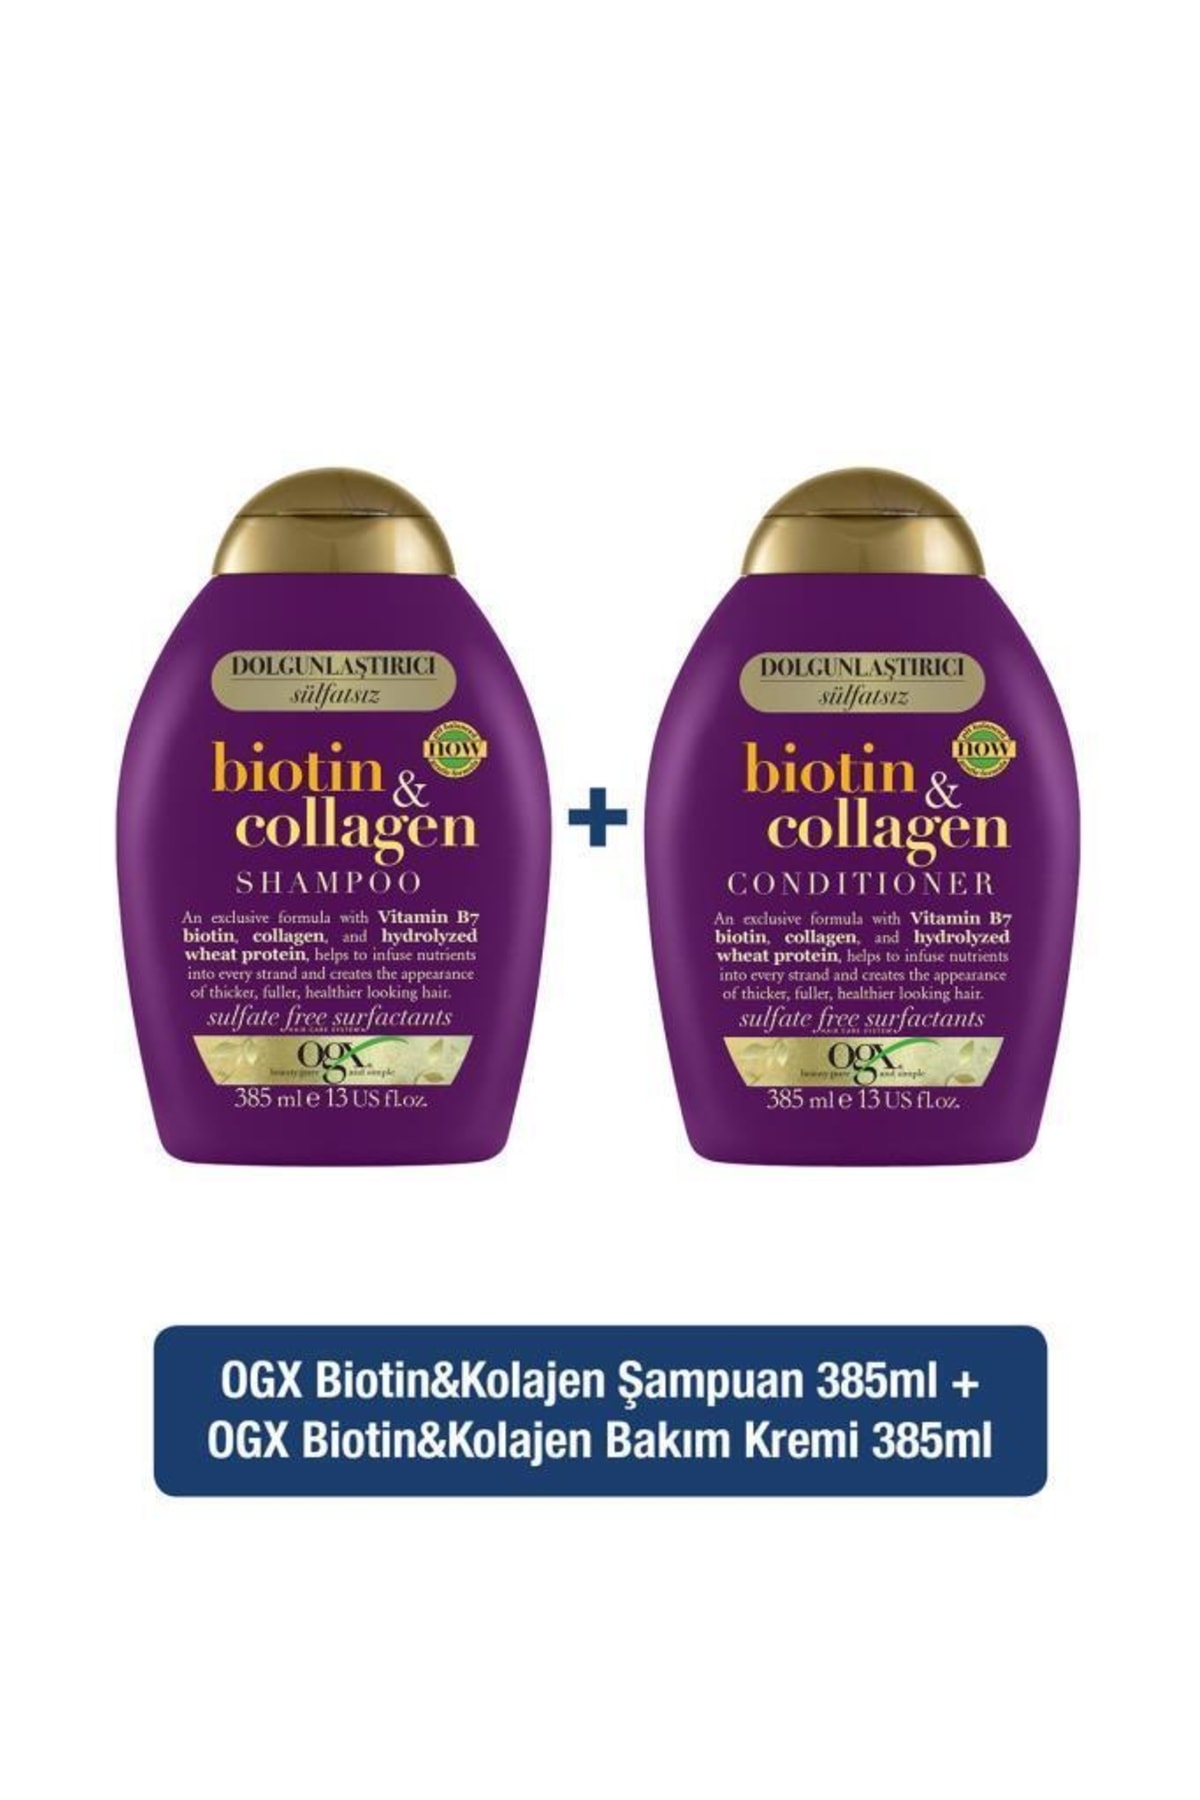 OGX Dolgunlaştırıcı Biotin & Kolajen Sülfatsız Şampuan 385 ML + Bakım Kremi